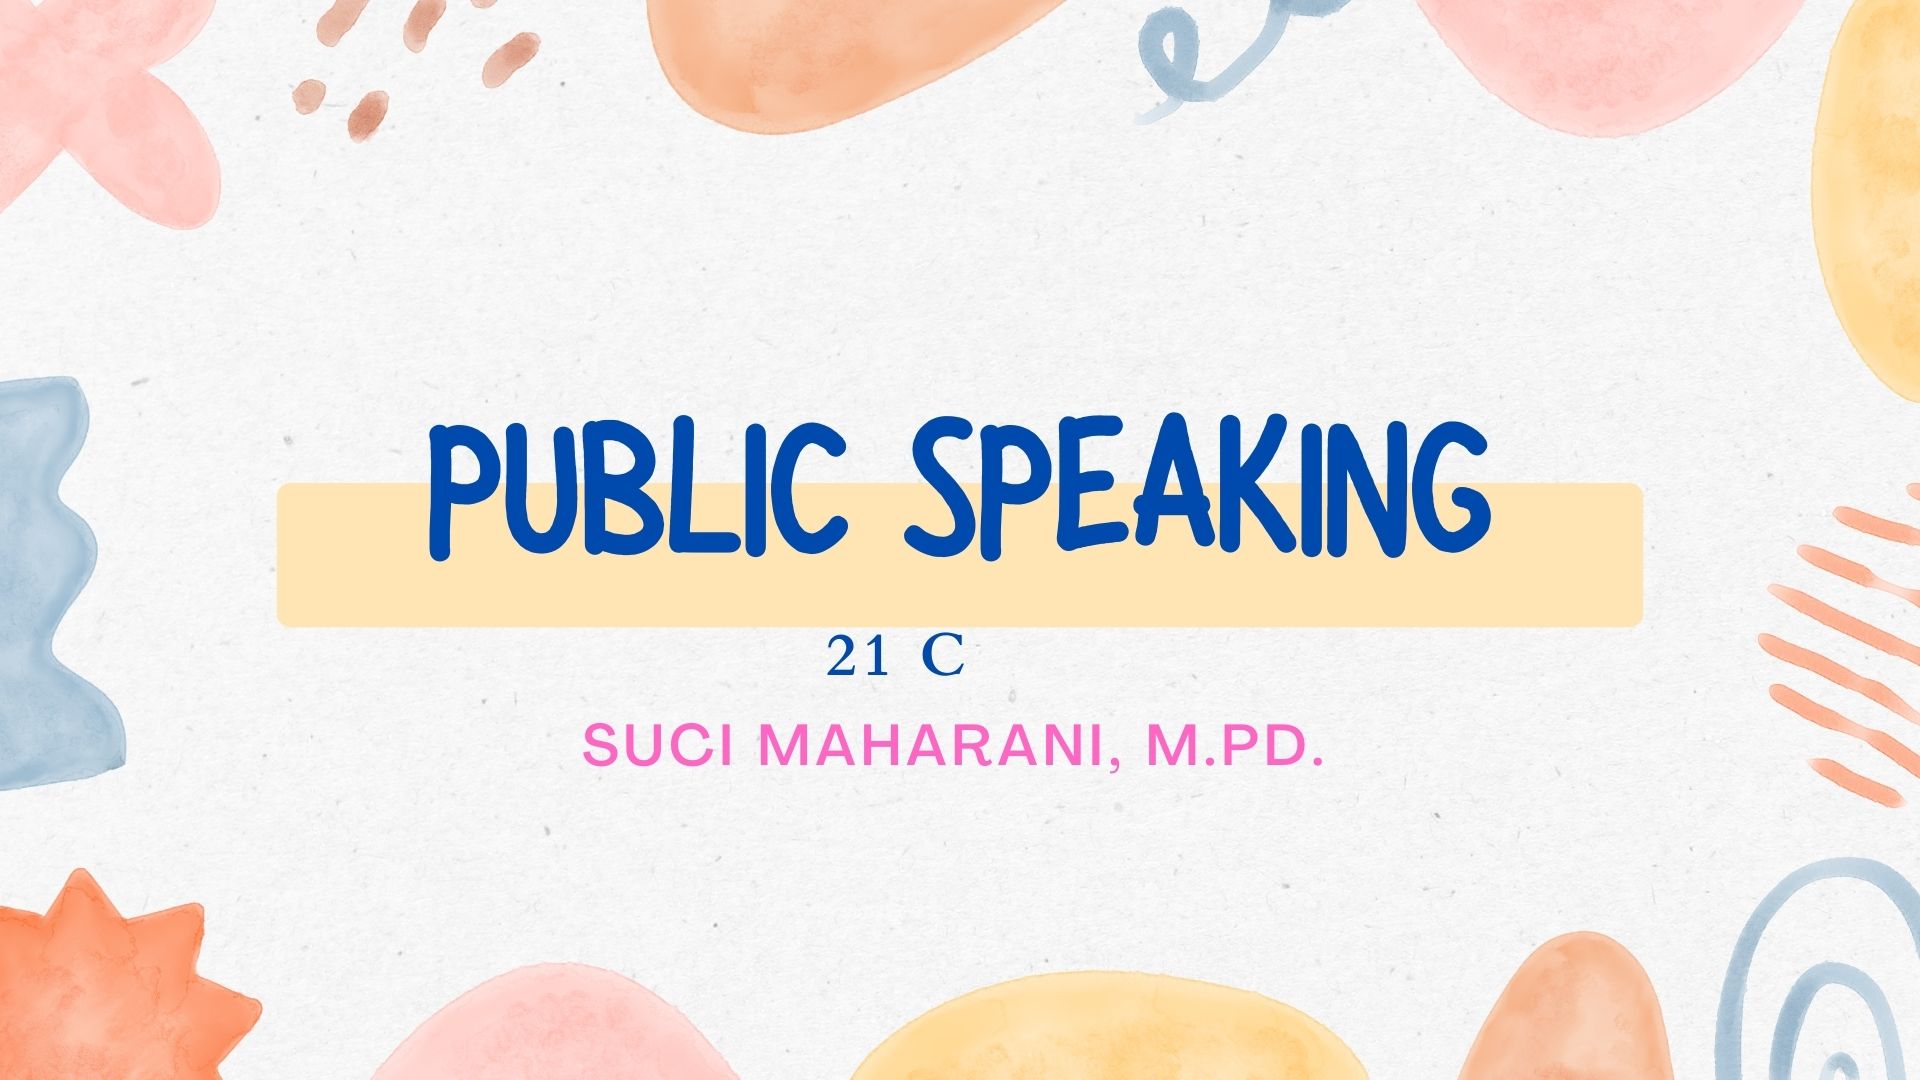 Public Speaking - 21 C 